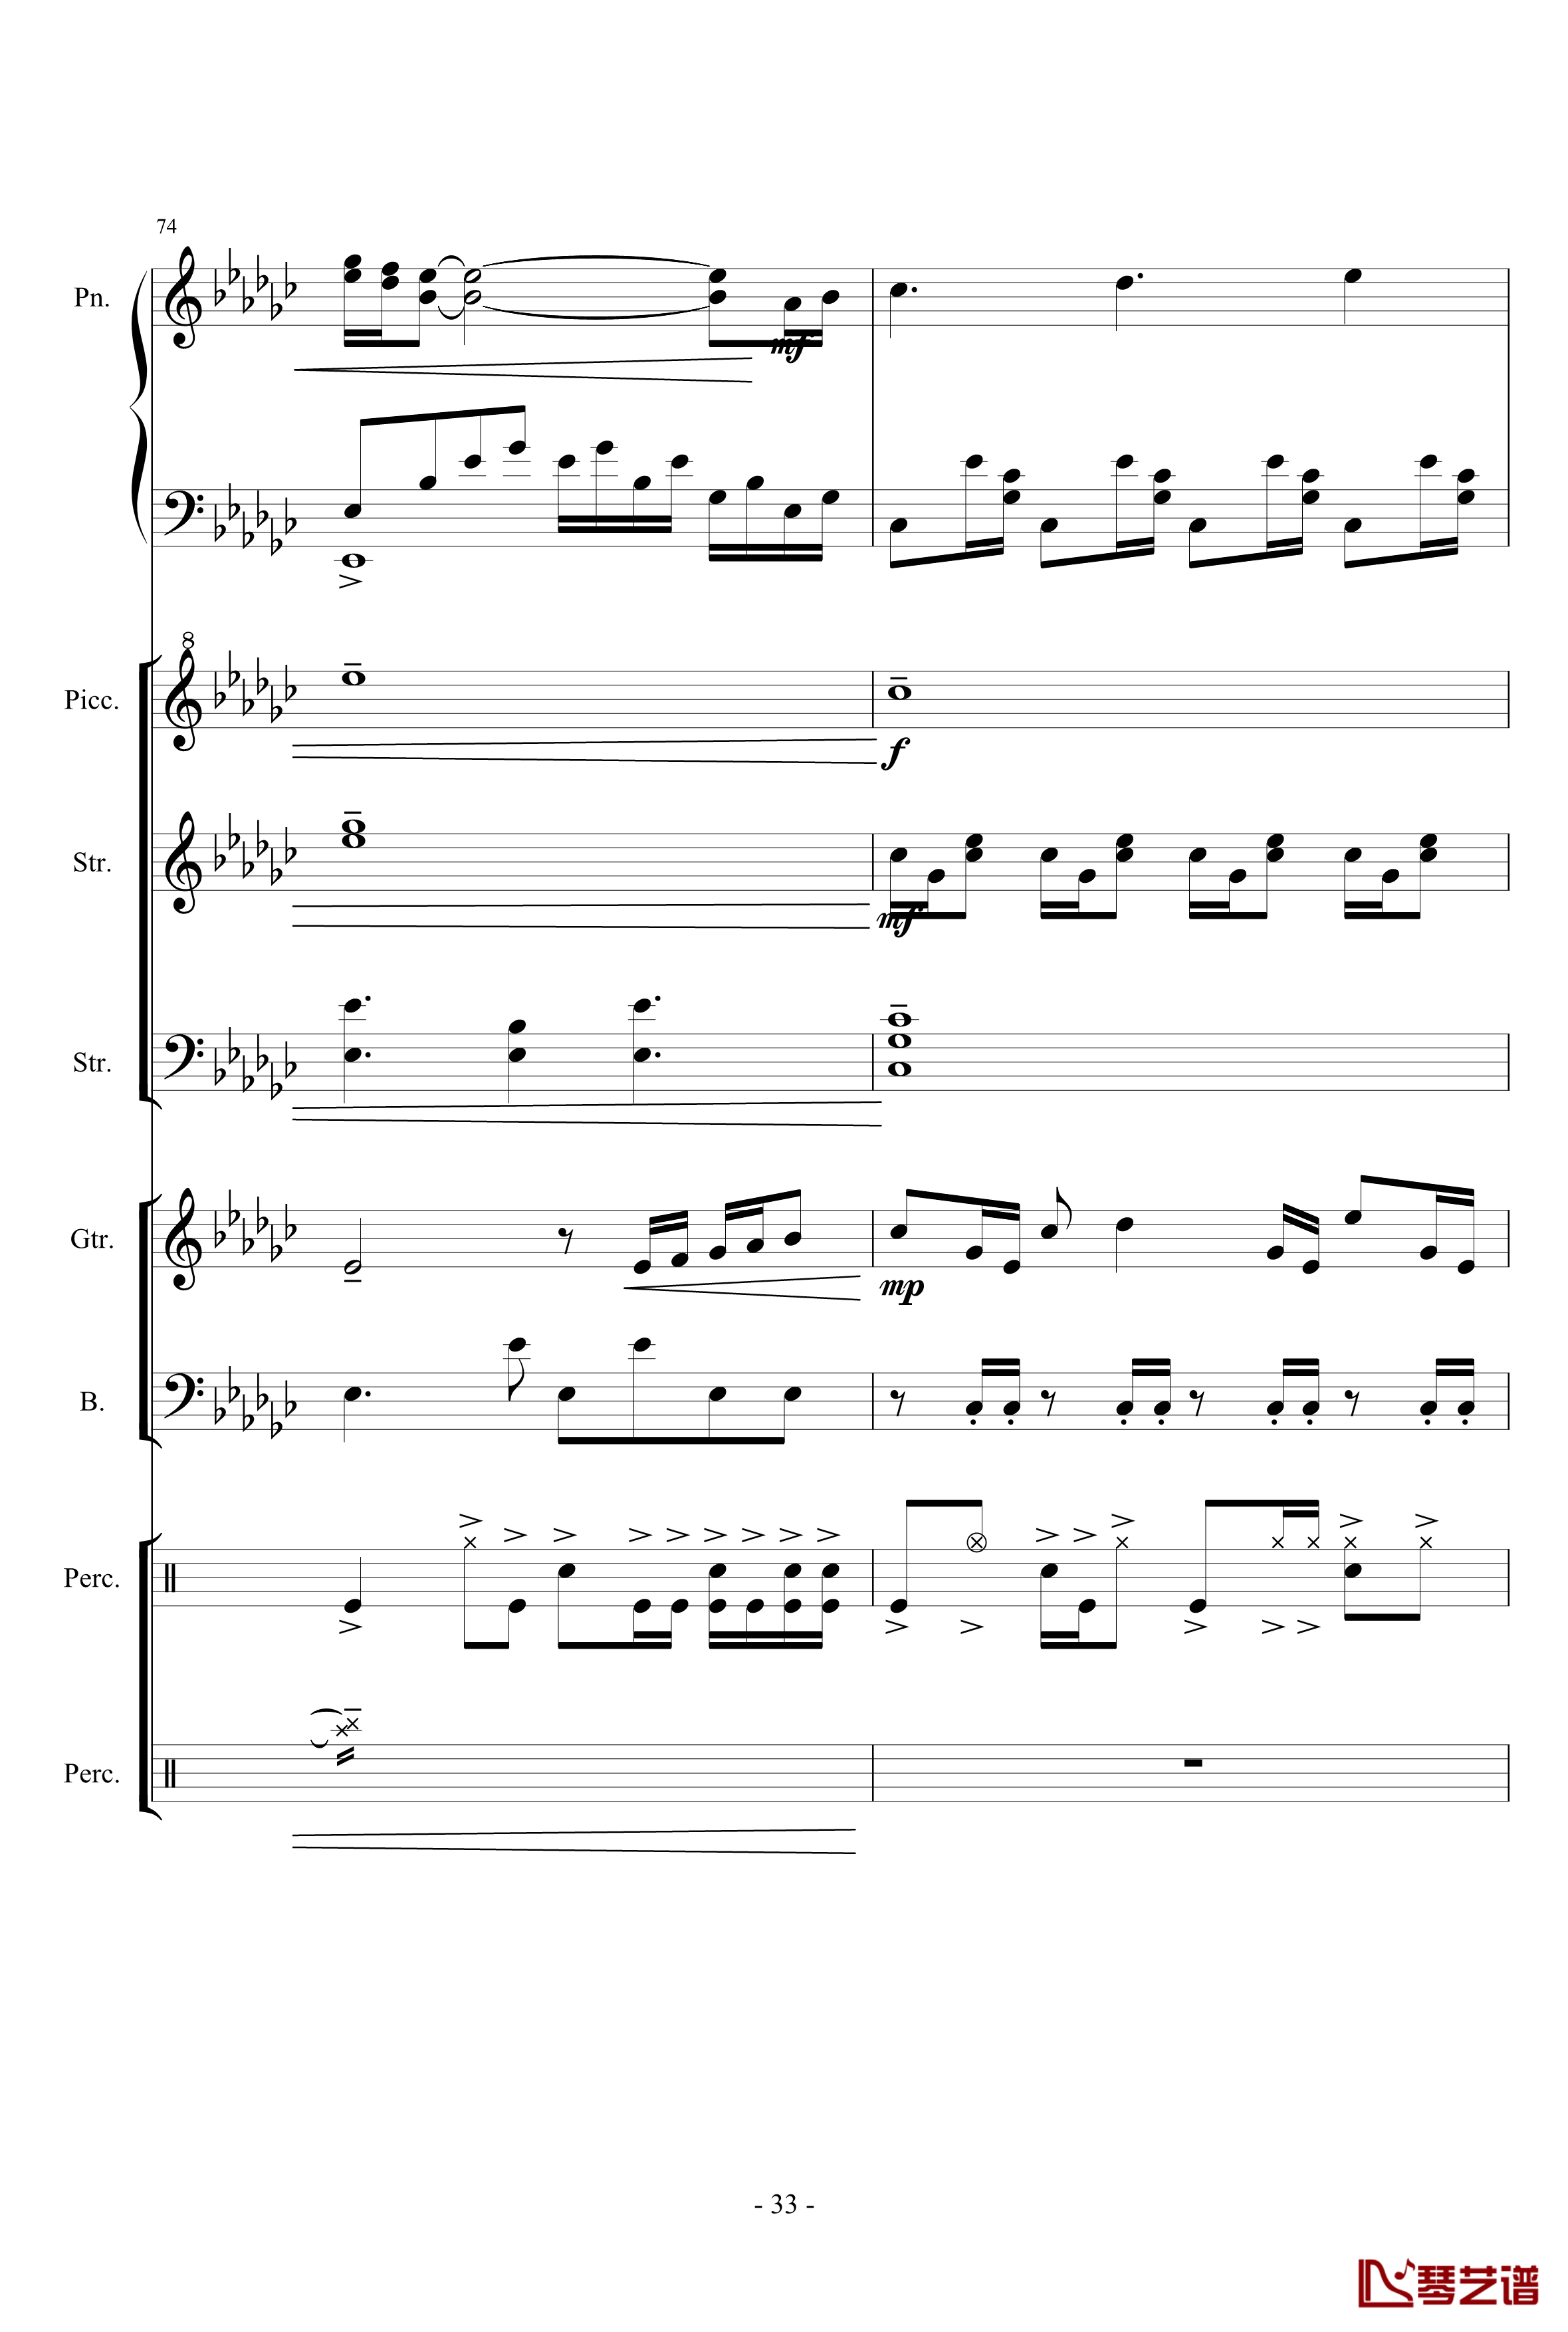 幻想世界之音2钢琴谱-lujianxiang55533